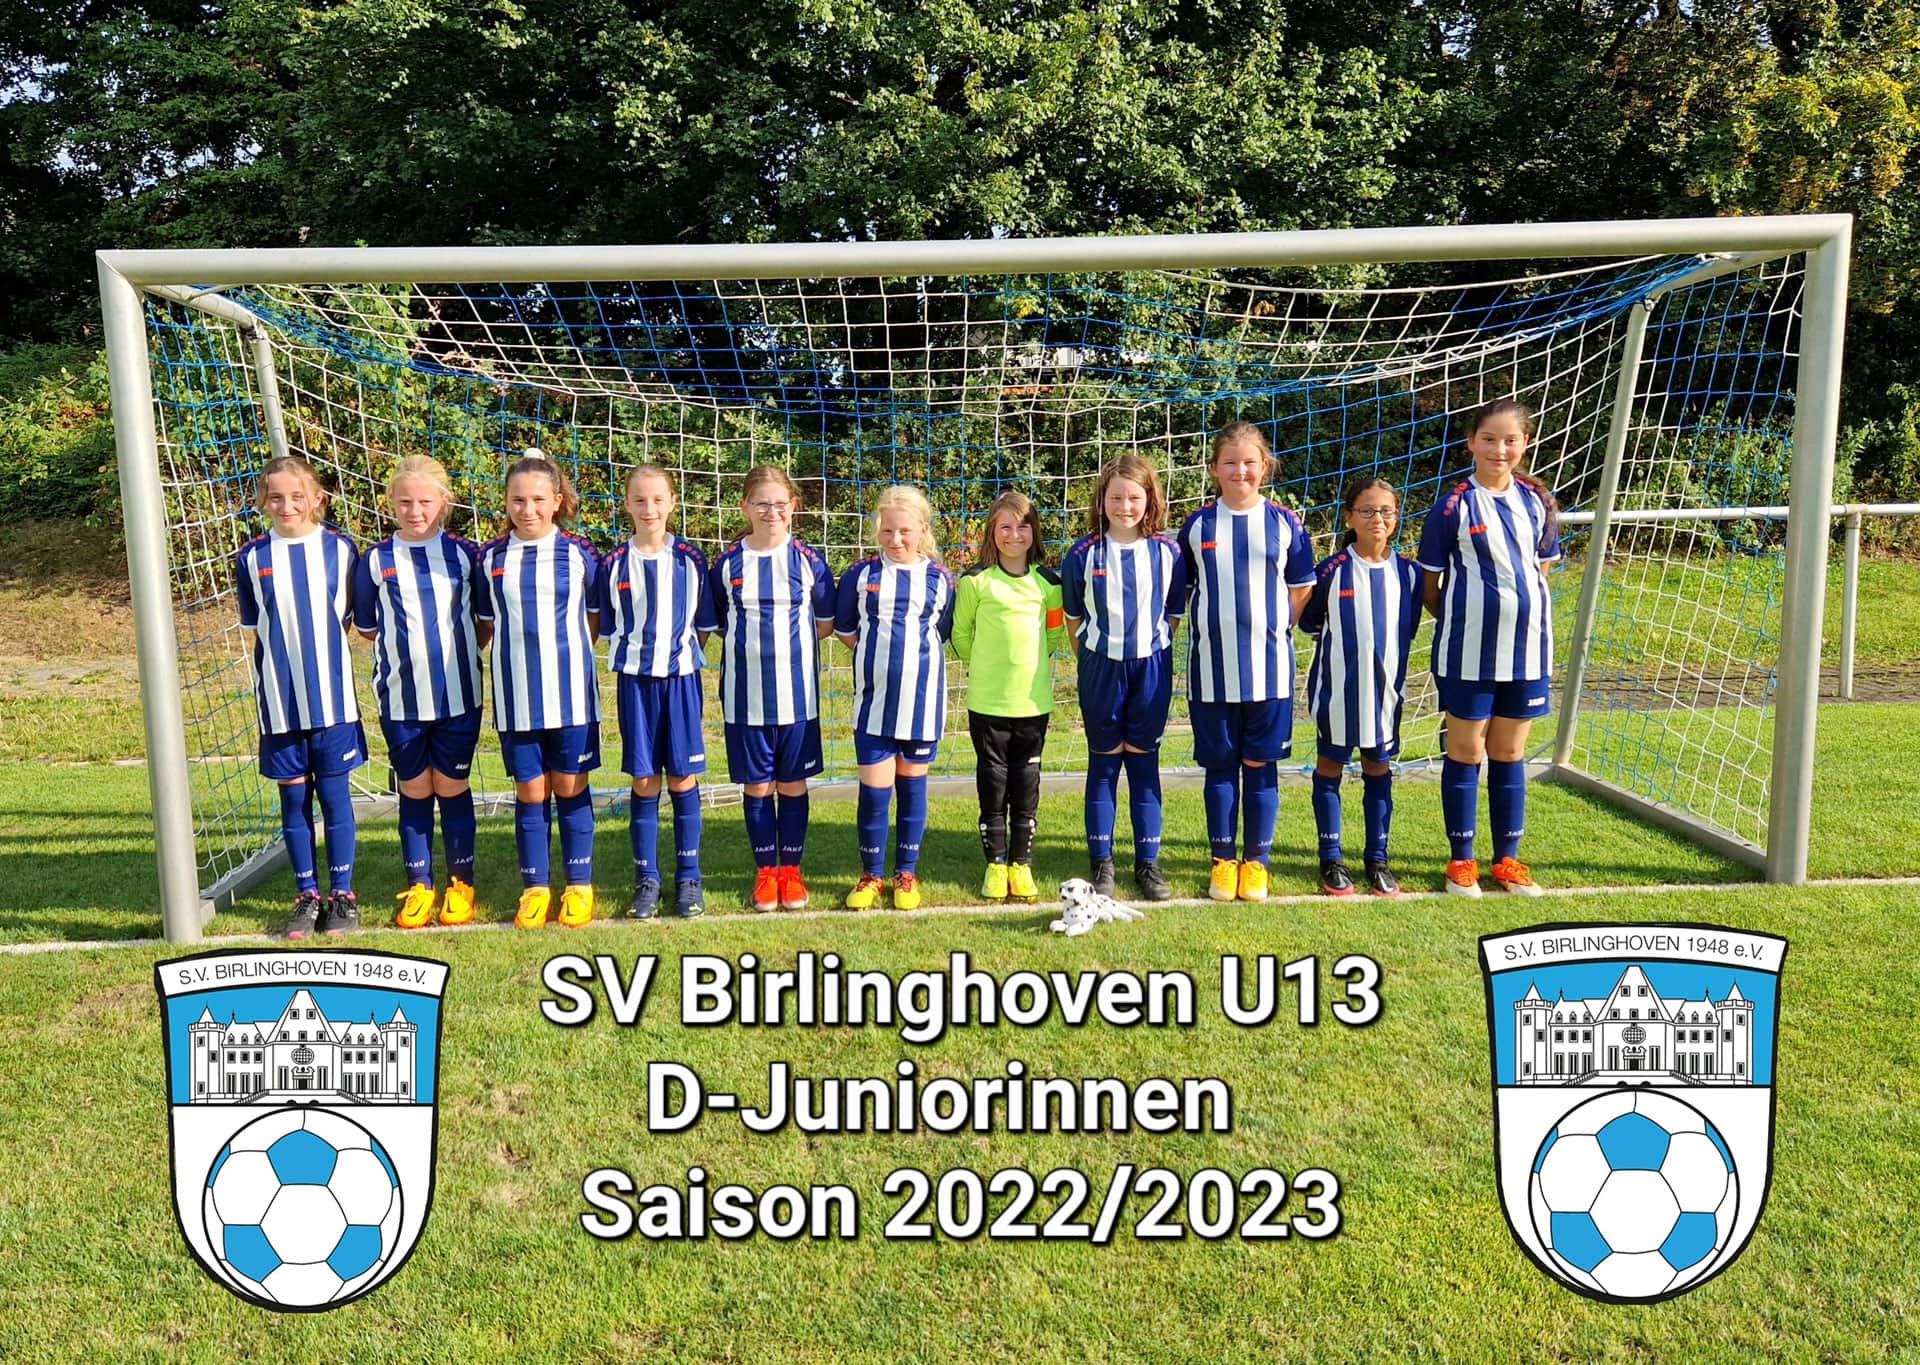 sv-birlinghoven-u13-fussballverein-sportverein-sankt-augustin-juniorion-u17-mannschaft-maedchenmannschaft